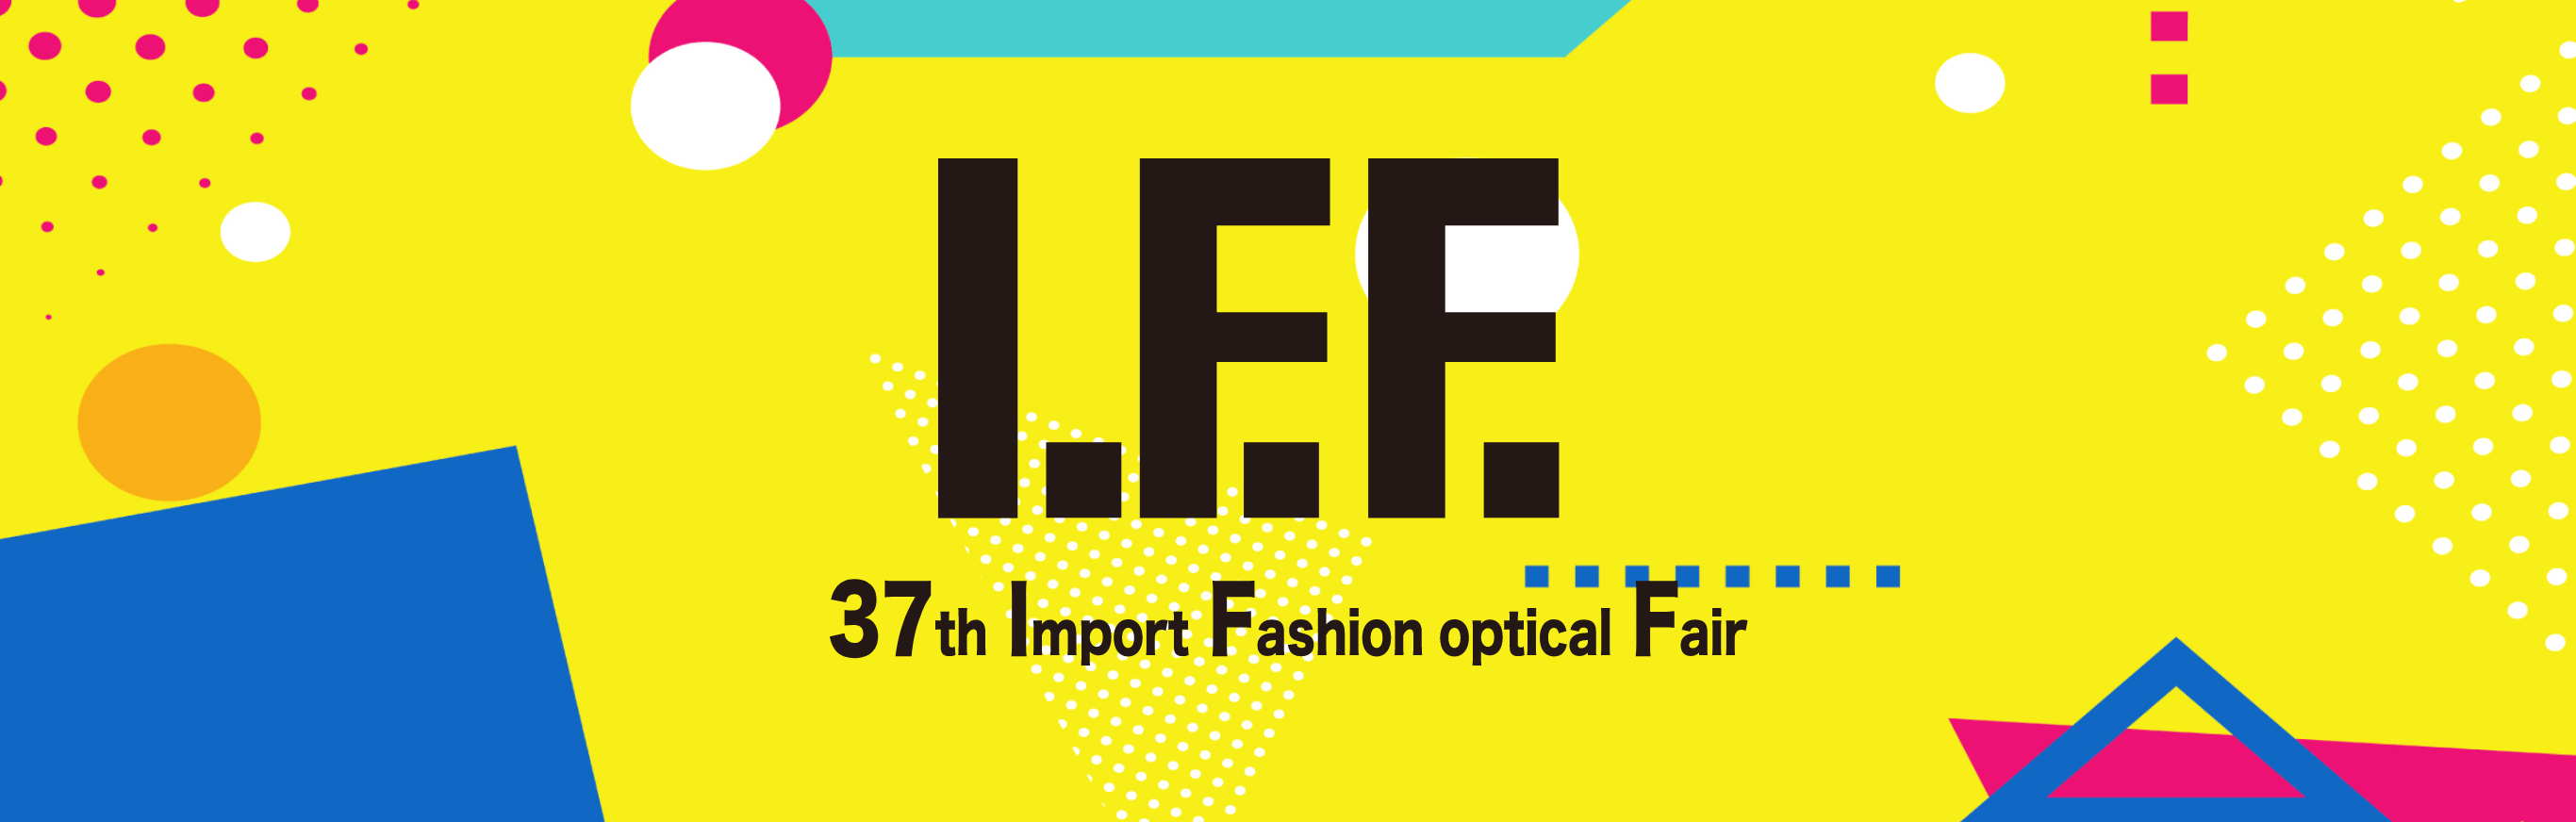 I.F.F. 37th Import Fashion optical Fair